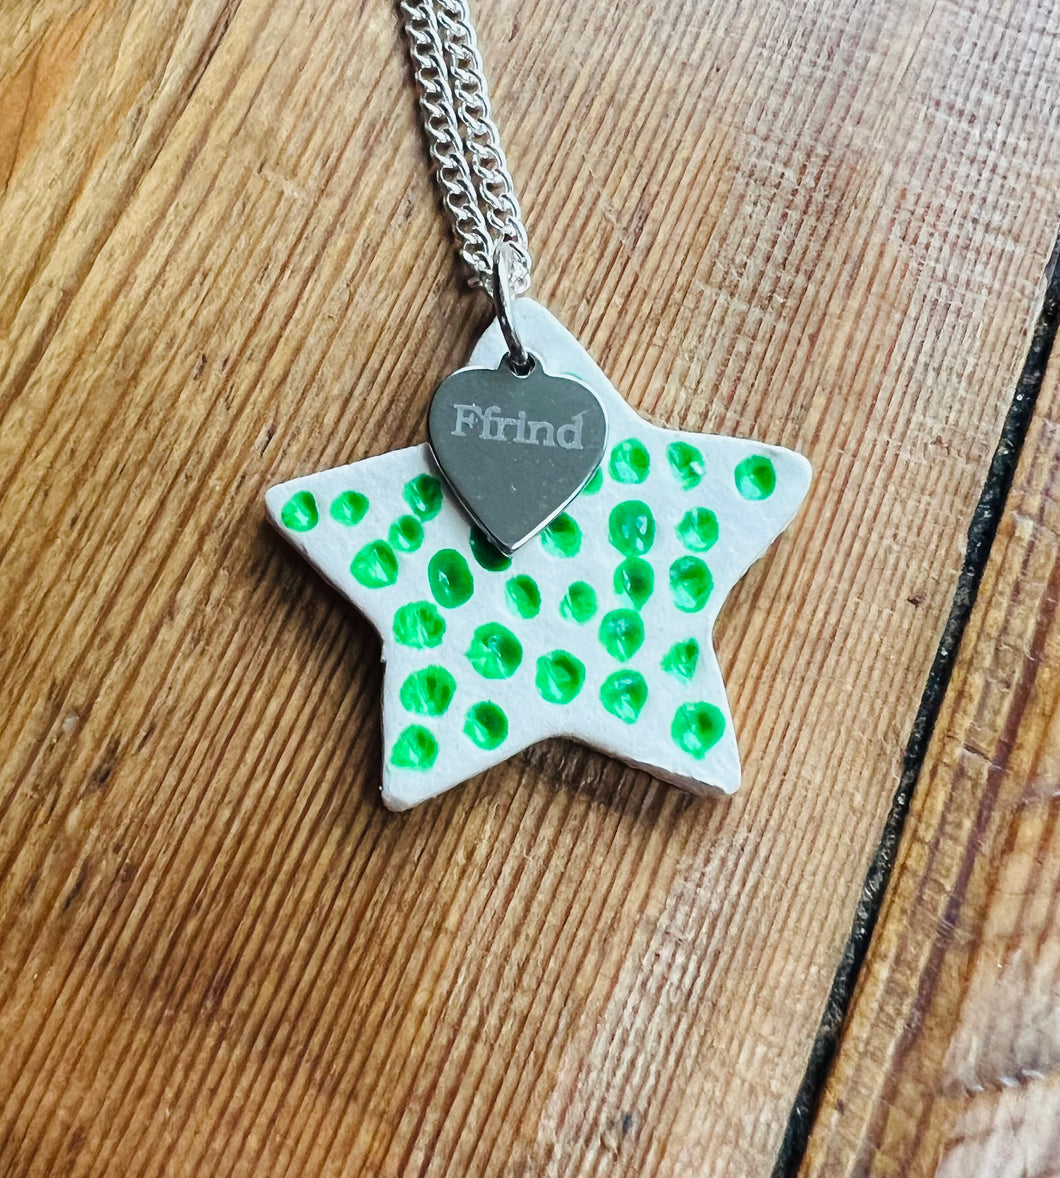 Mwclis seren gwyrdd Ffrind / Ffrind green star necklace